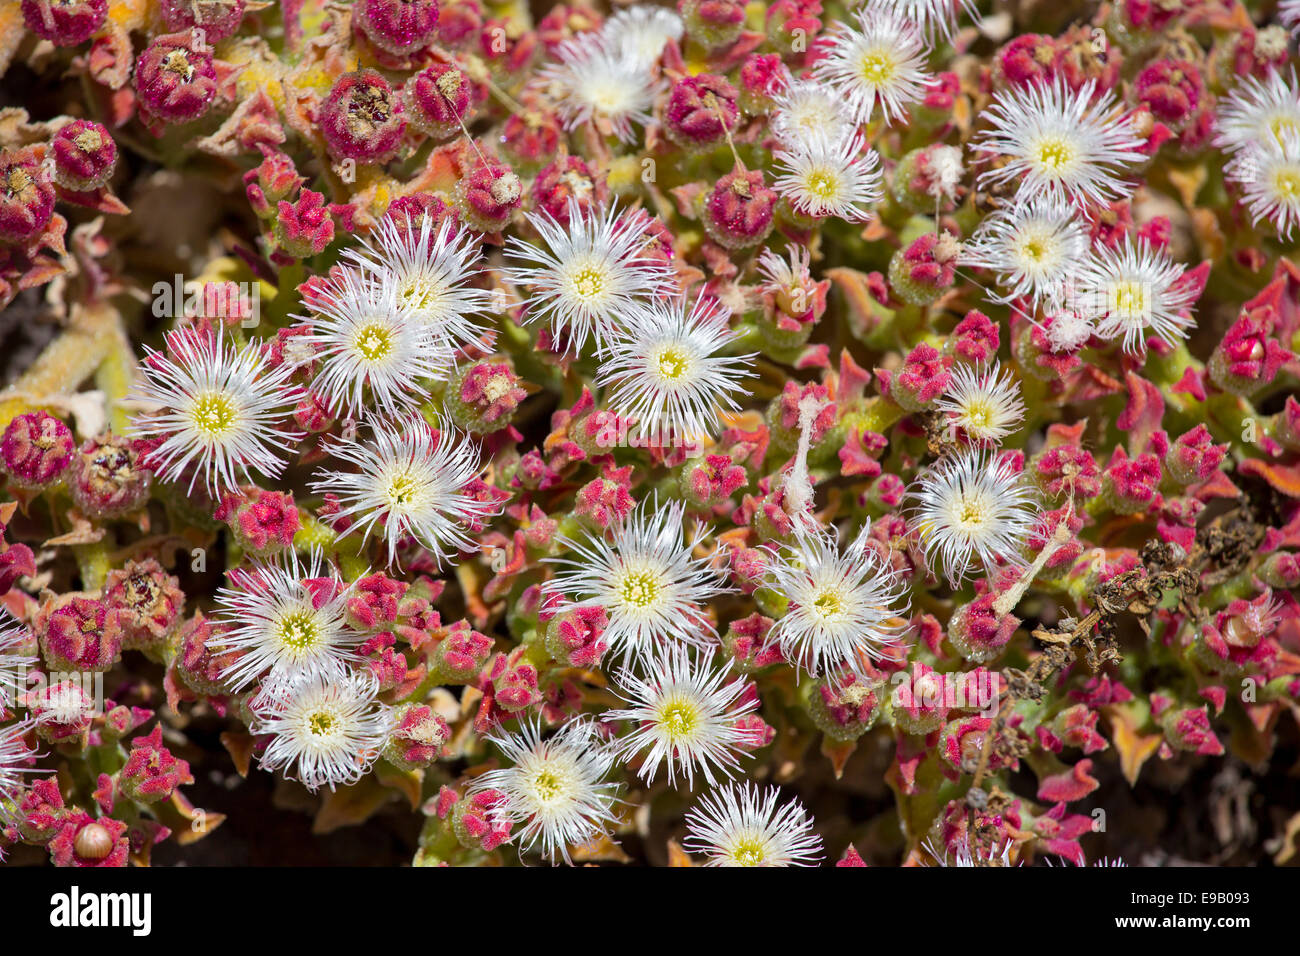 Impianto di ghiaccio cristallino o Iceplant (Mesembryanthemum crystallinum), Valle Gran Rey, La Gomera, isole Canarie, Spagna Foto Stock